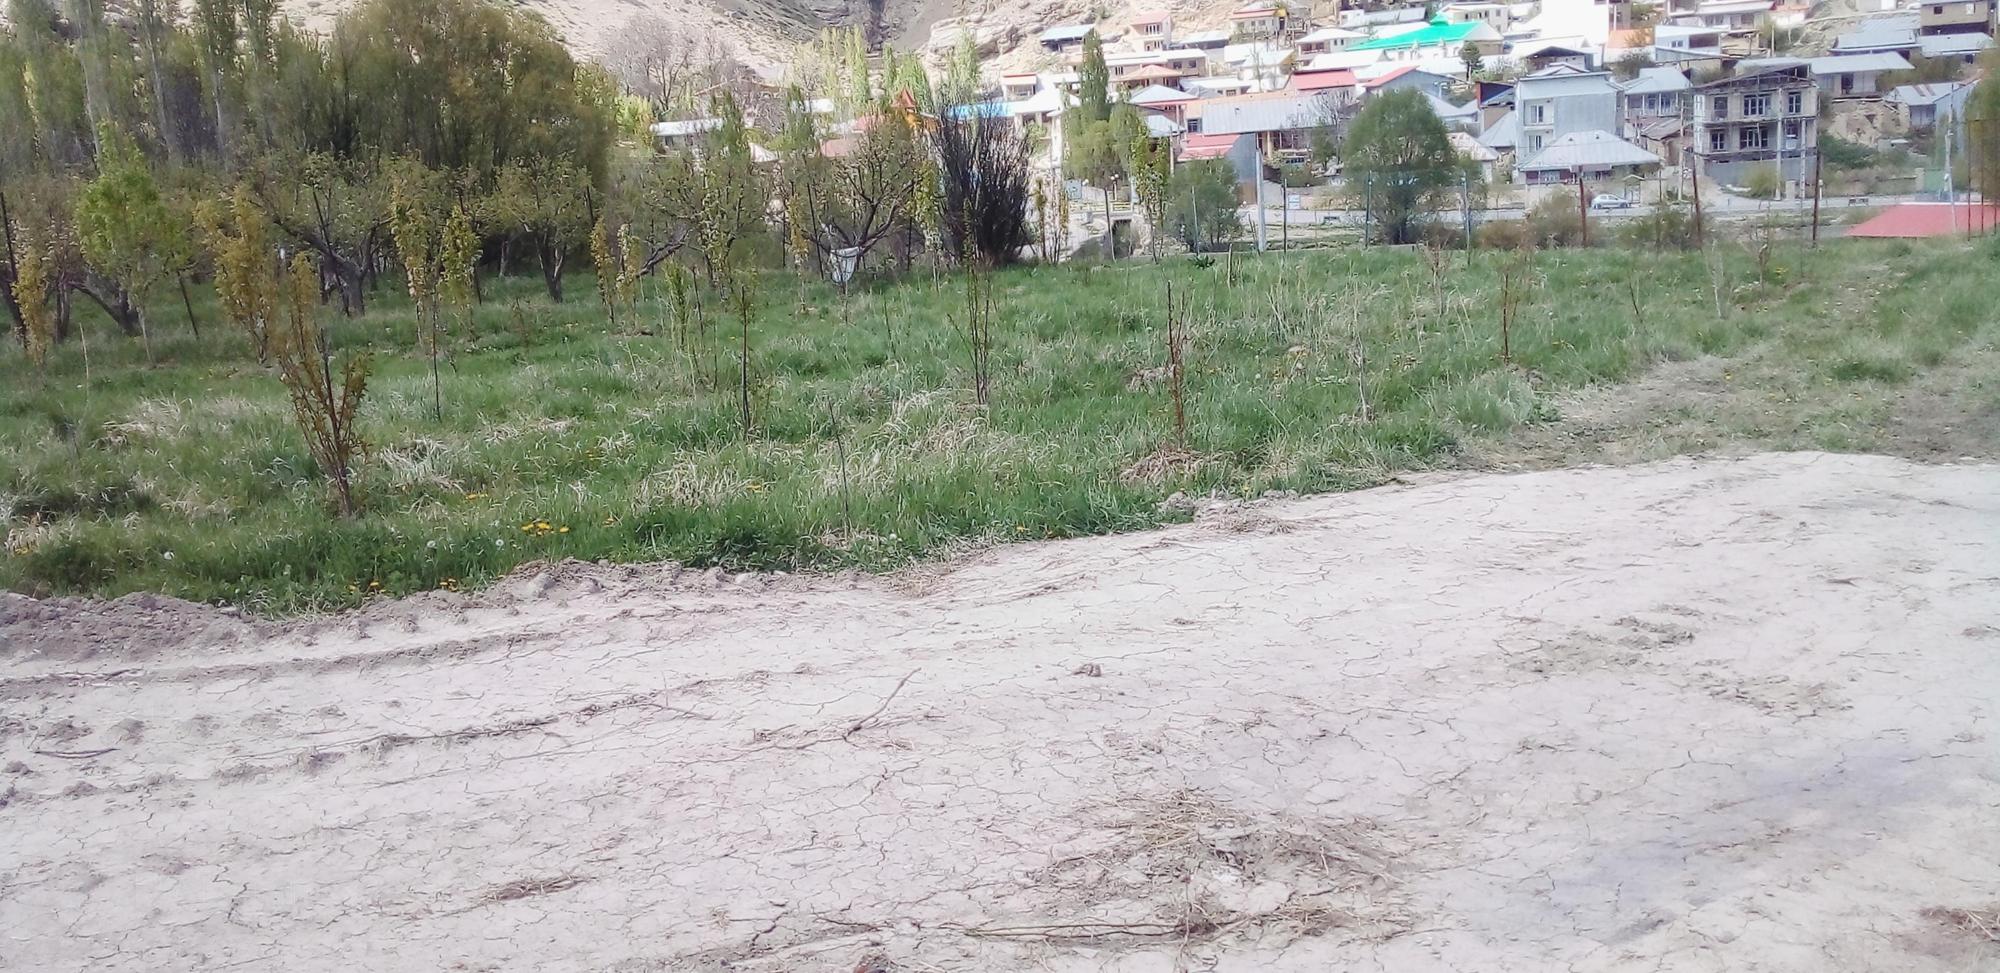 زمین کشاورزی حاصلخیز در یکی از زیباترین روستاهای فیروزکوه